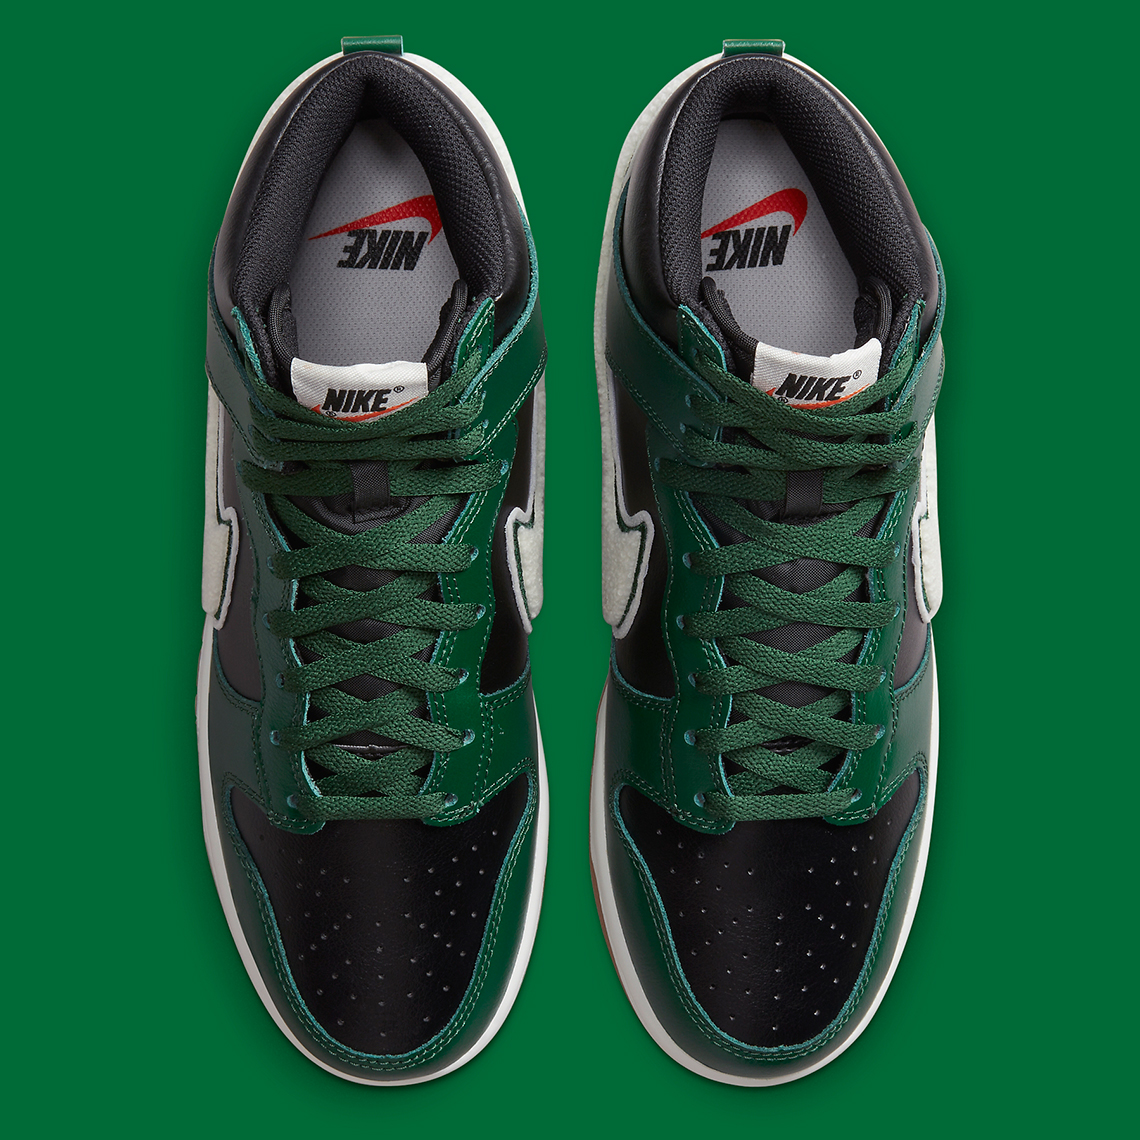 Nike Dunk High Chenille Green Black White Dr8805 001 8